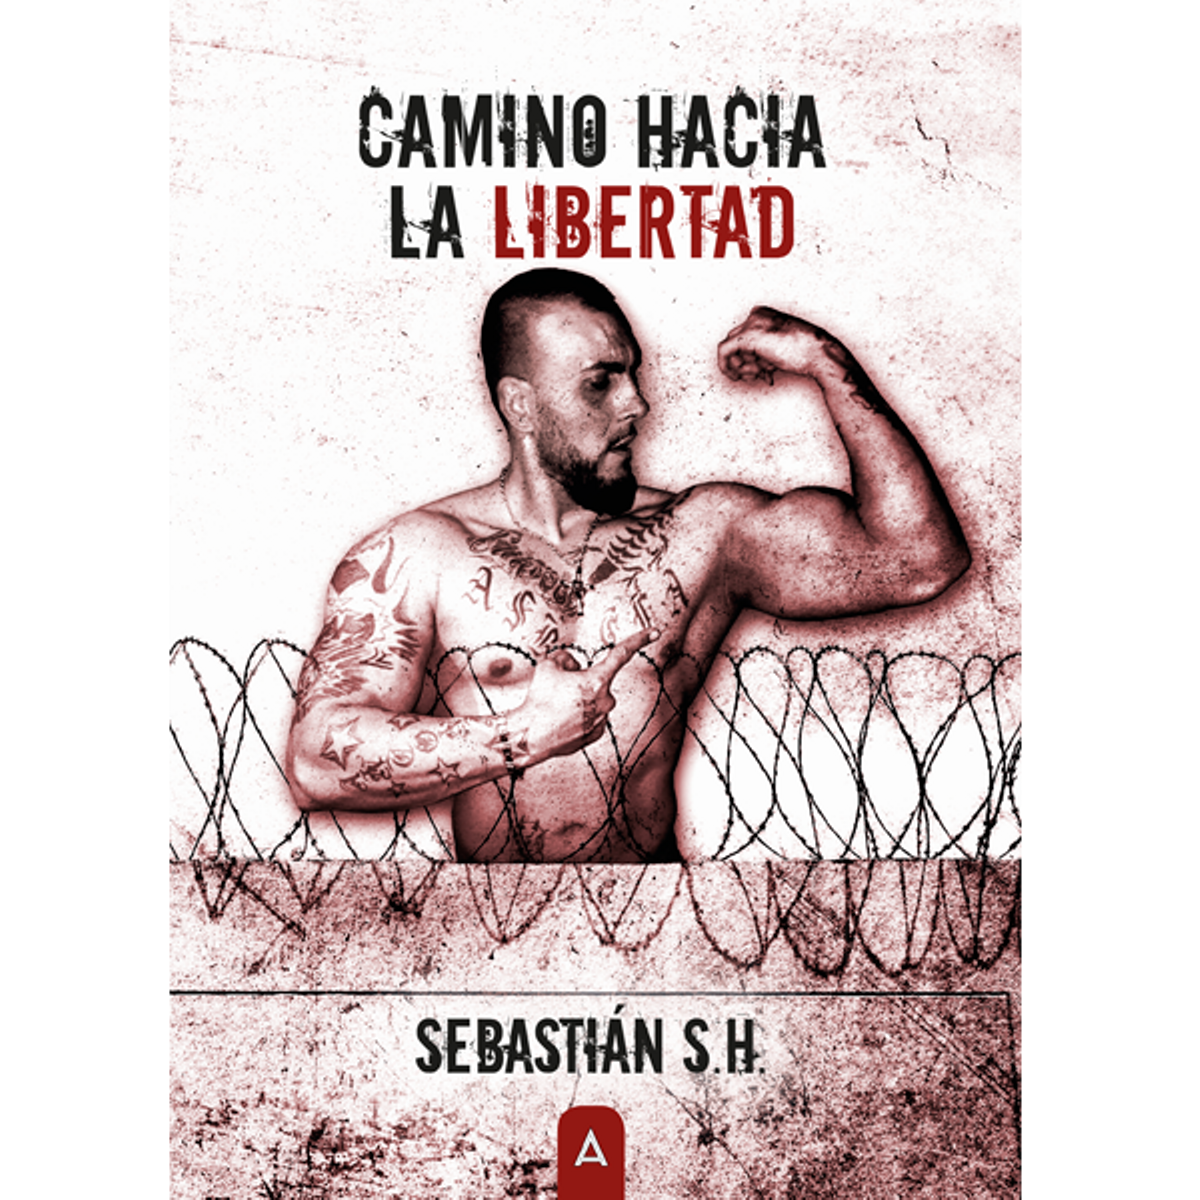 Santiago ha escrito un libro sobre sus vivencias en la cárcel